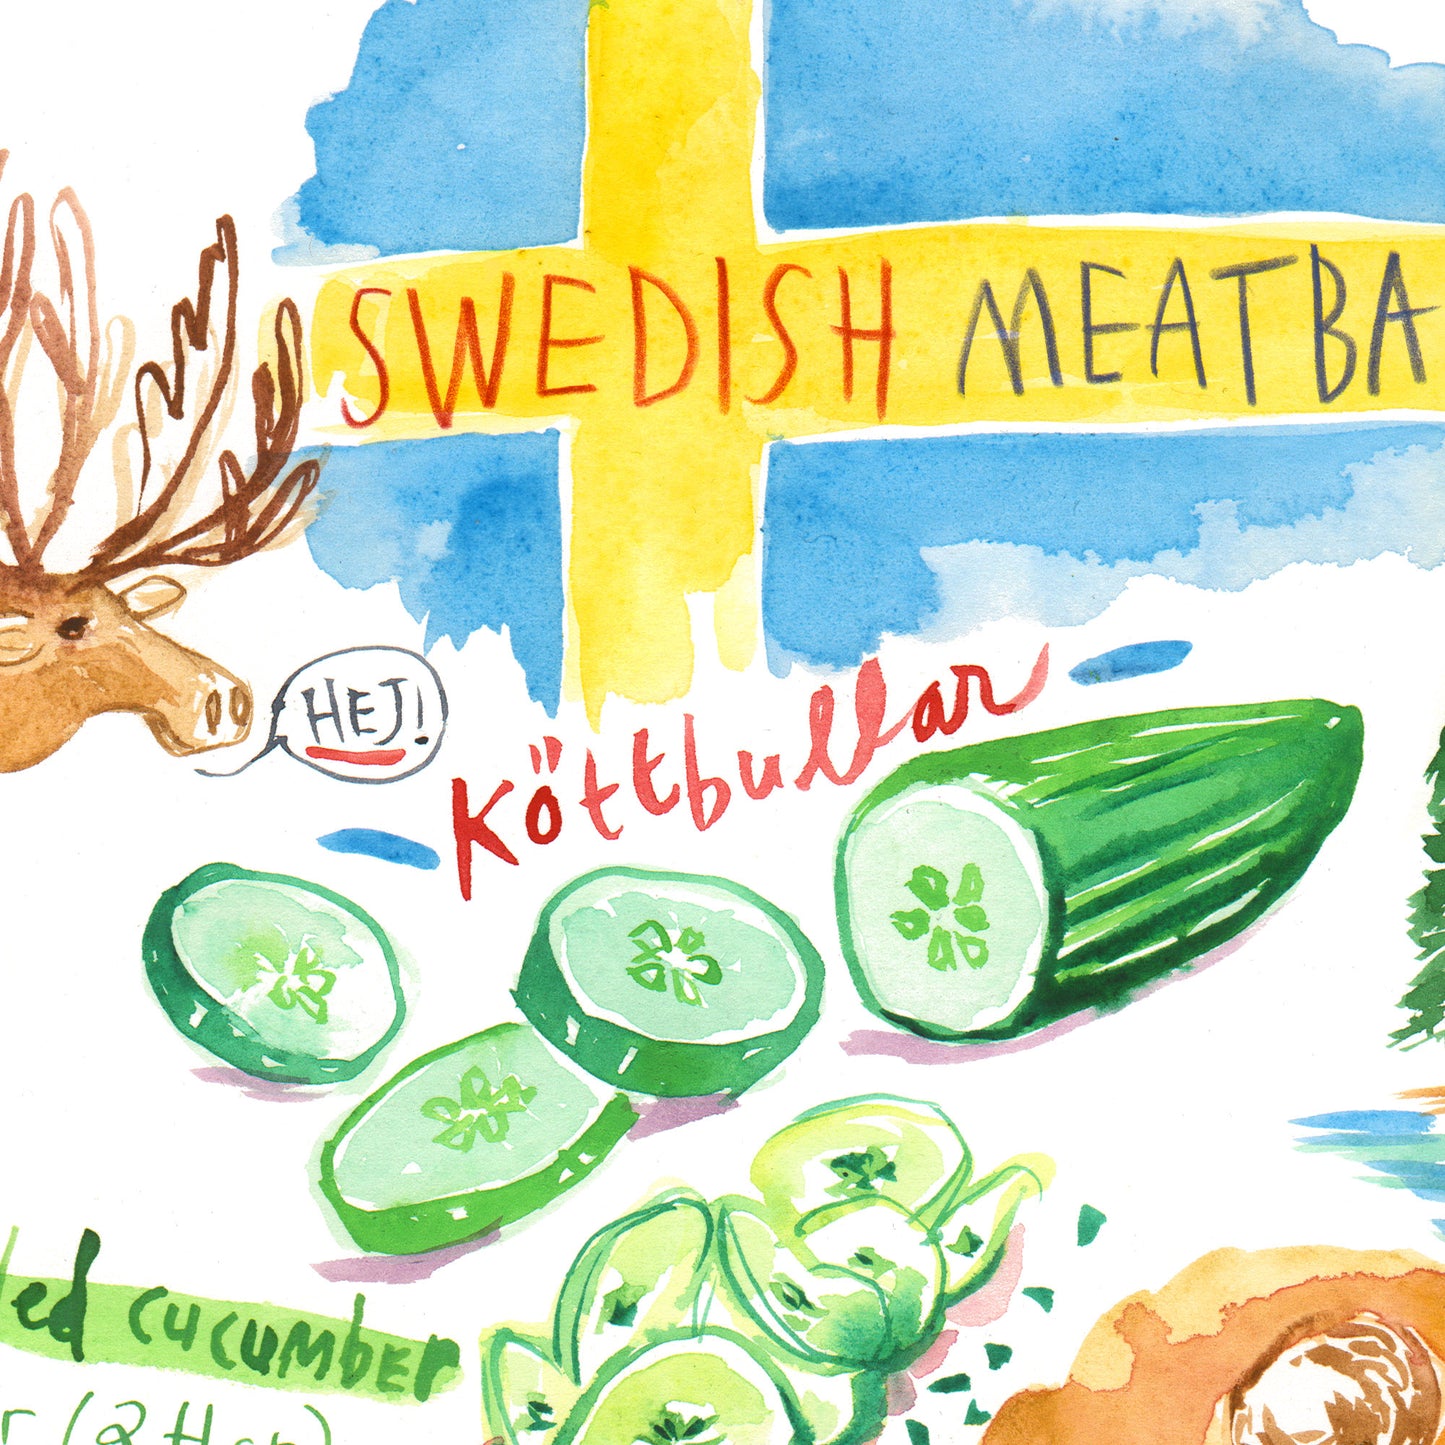 Swedish meatball recipe - Köttbullar